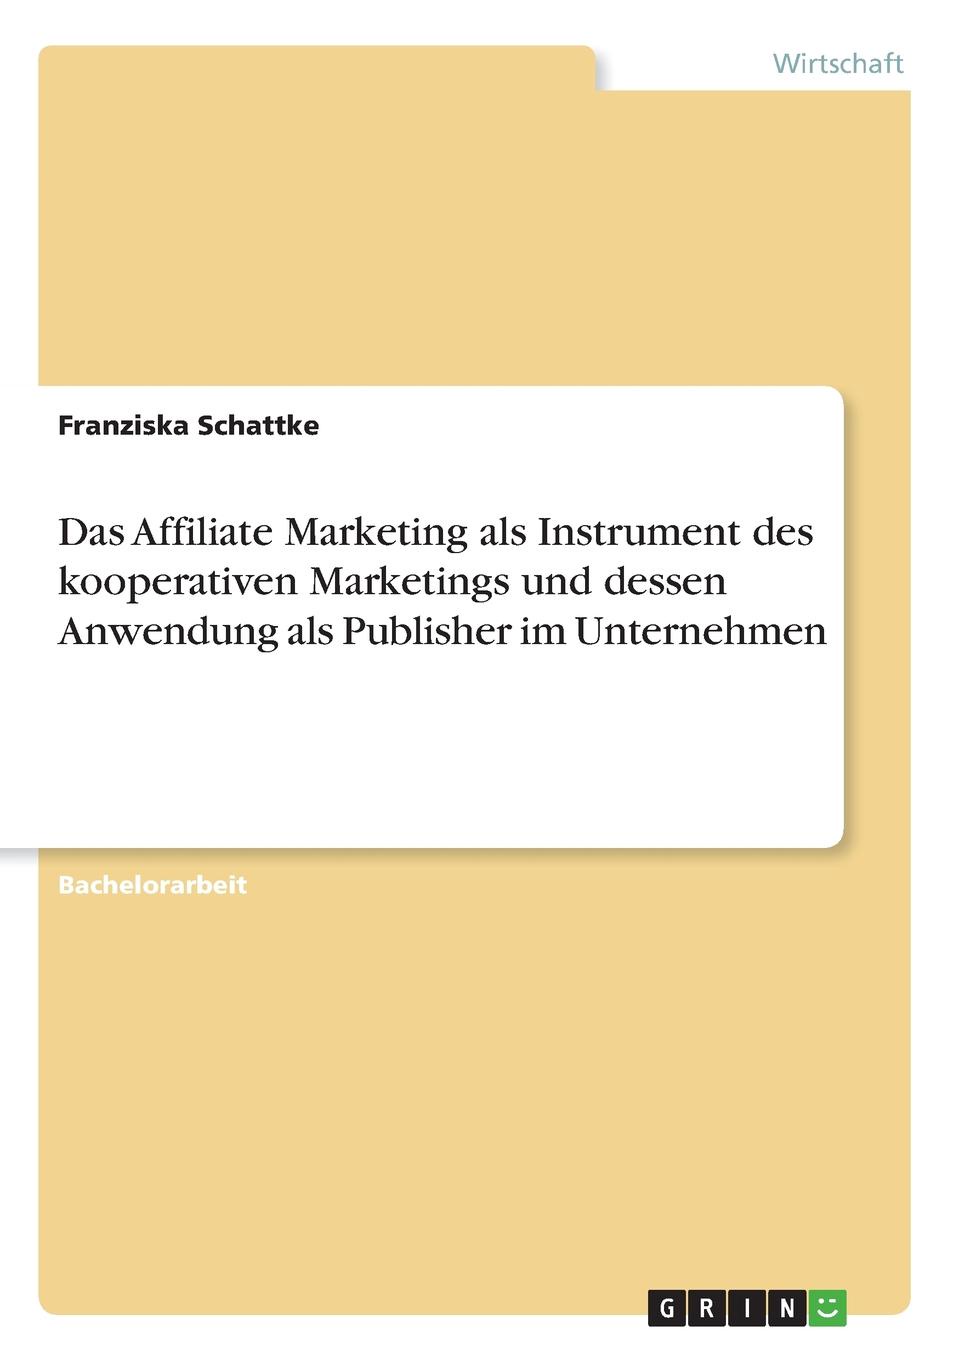 Das Affiliate Marketing als Instrument des kooperativen Marketings und dessen Anwendung als Publisher im Unternehmen